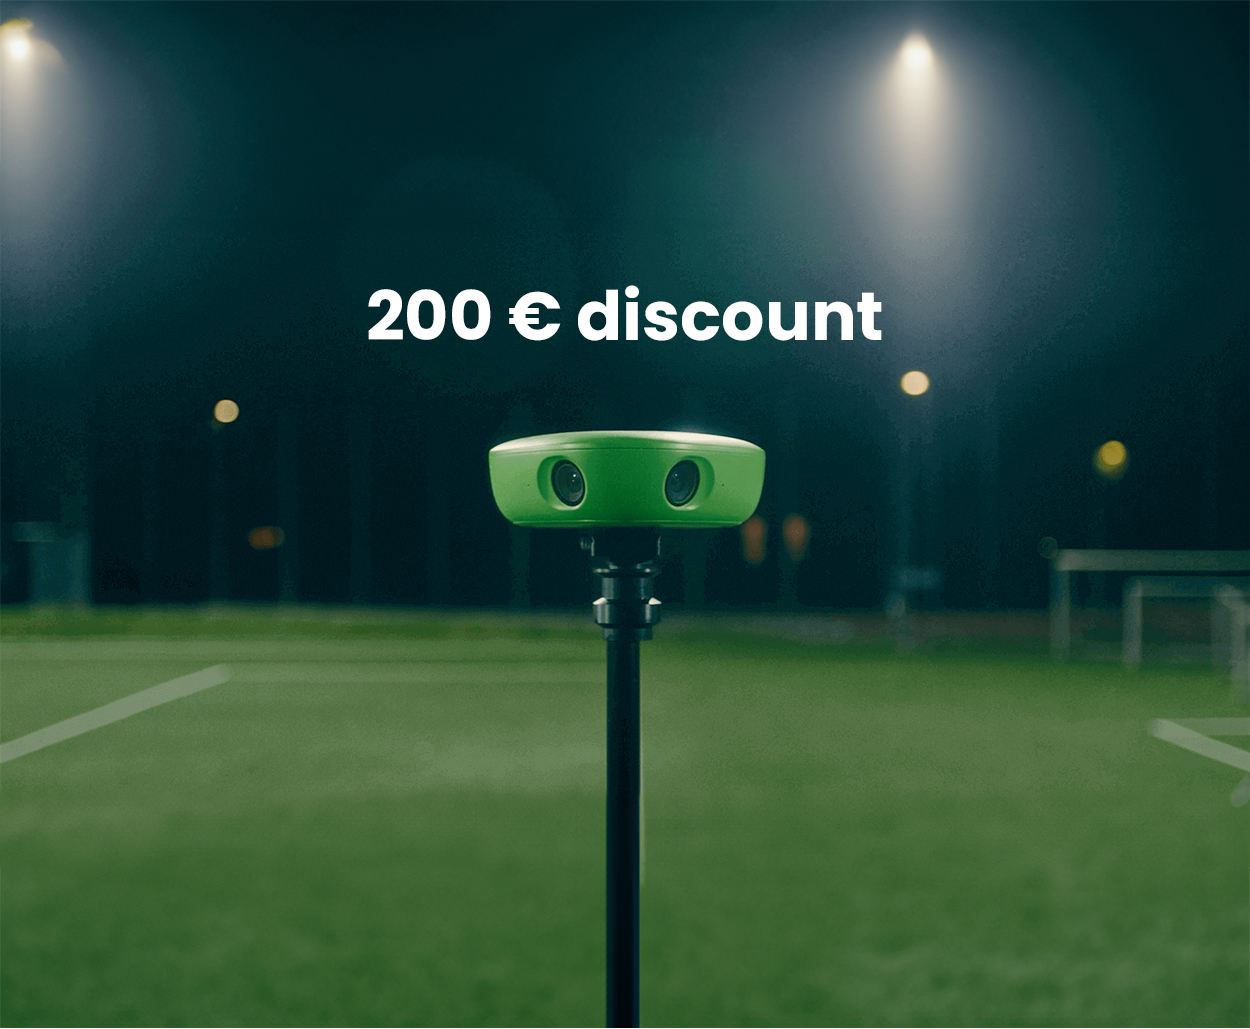 Primește un discount de 200 € pentru camera VEO prin parteneriatul cu The Football Brain